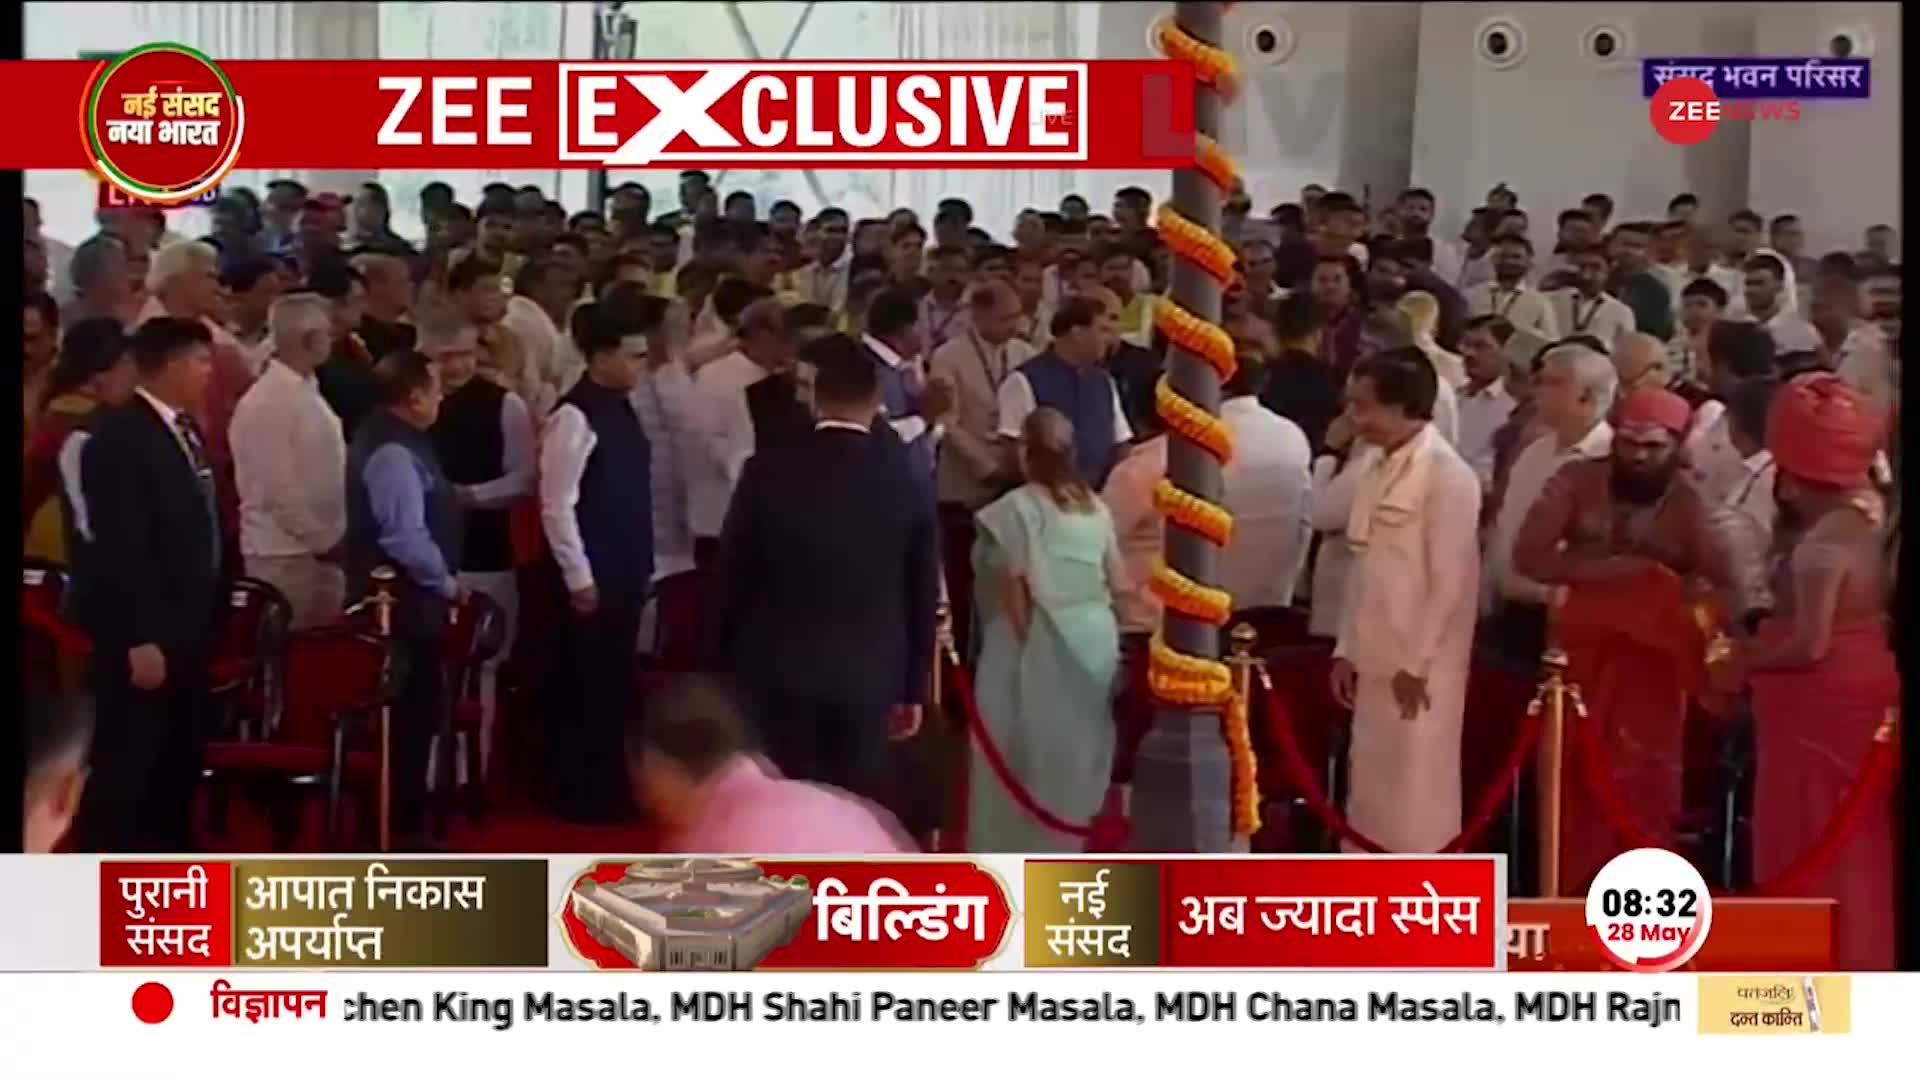 PM मोदी ने किया नए संसद भवन का उद्घाटन, समारोह में दिखी सभी धर्मों की झलक